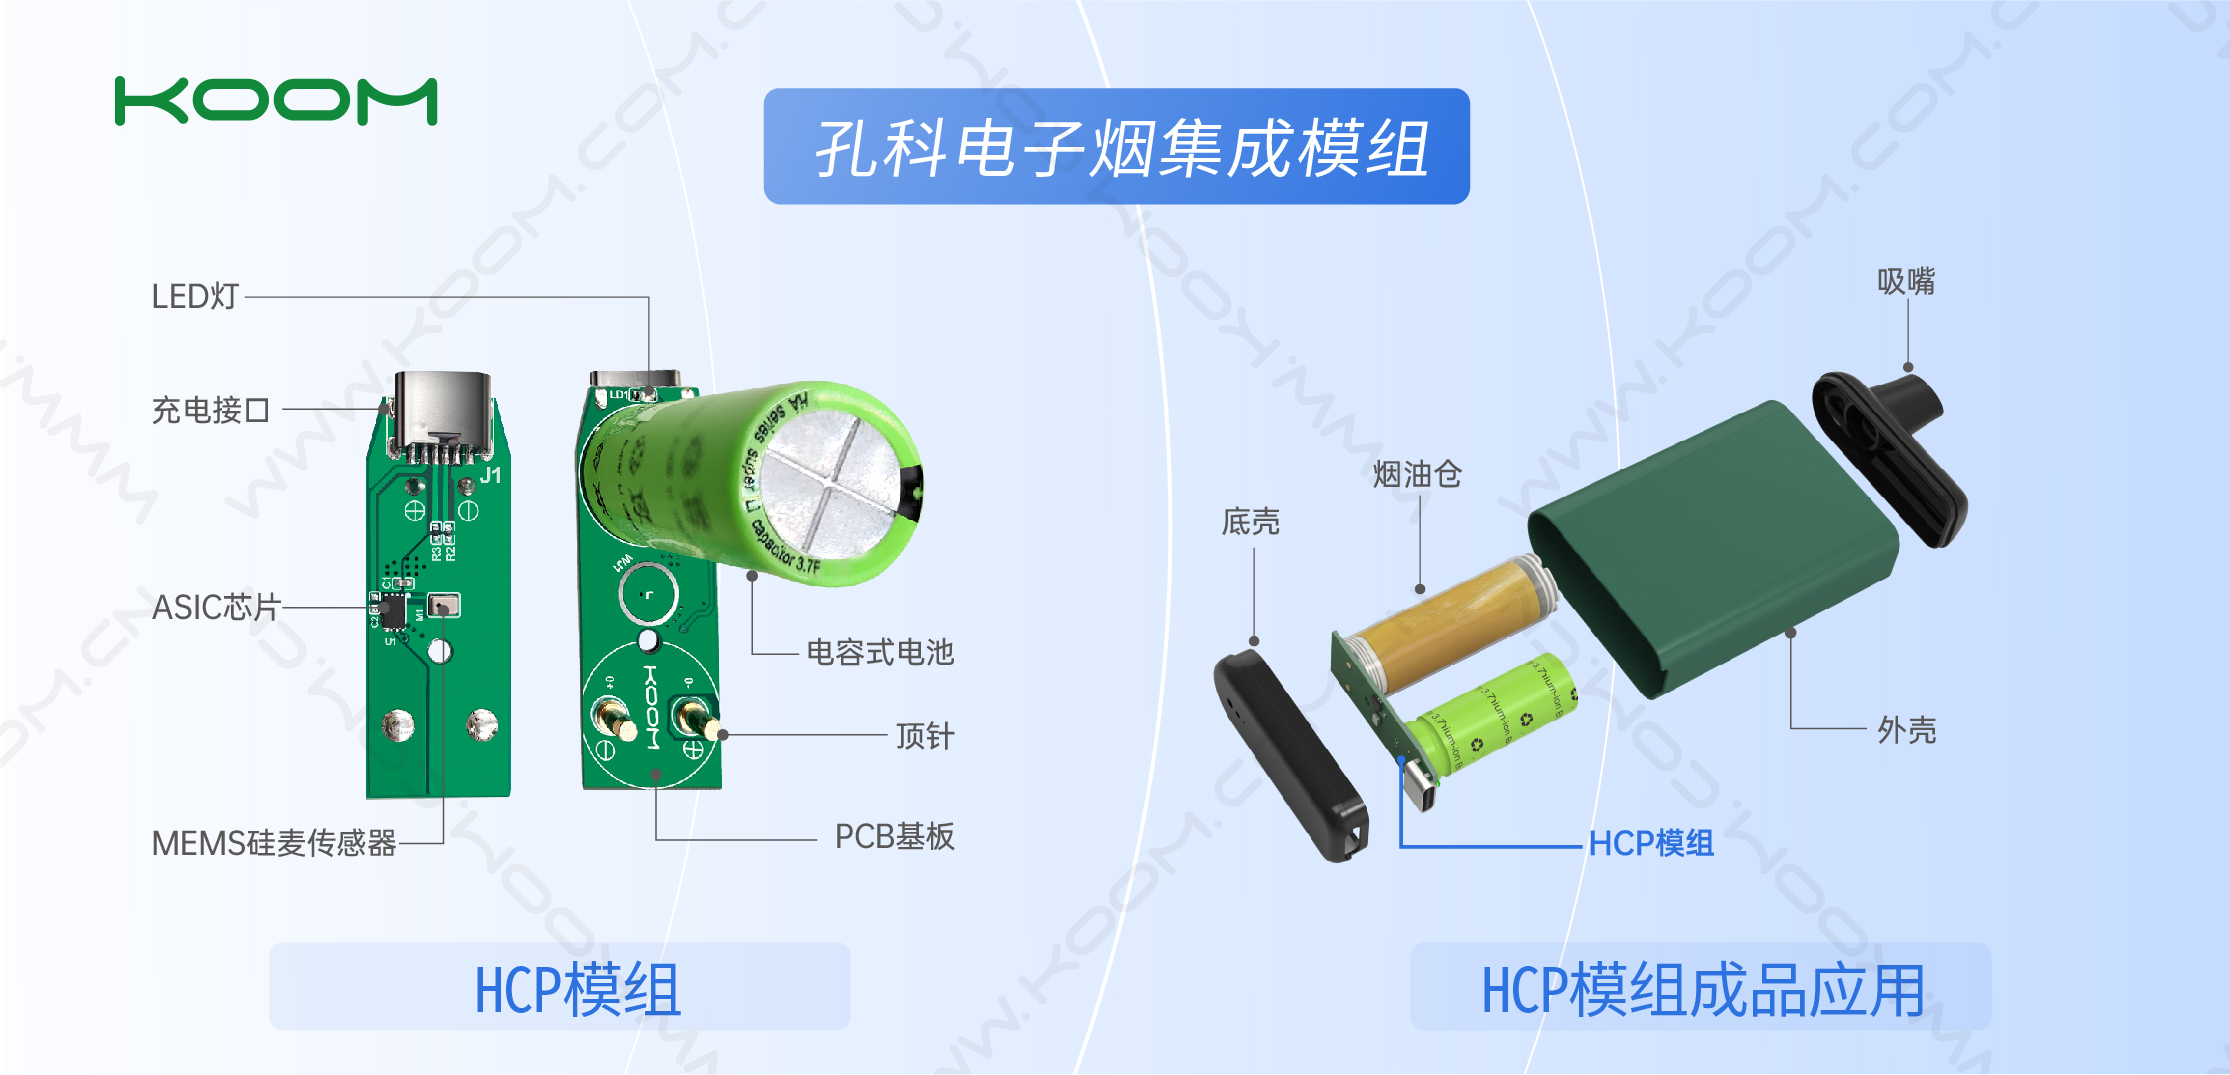 电子烟pcba方案板+锂电池电芯二合一结构设计的一体化HCP电子烟模组